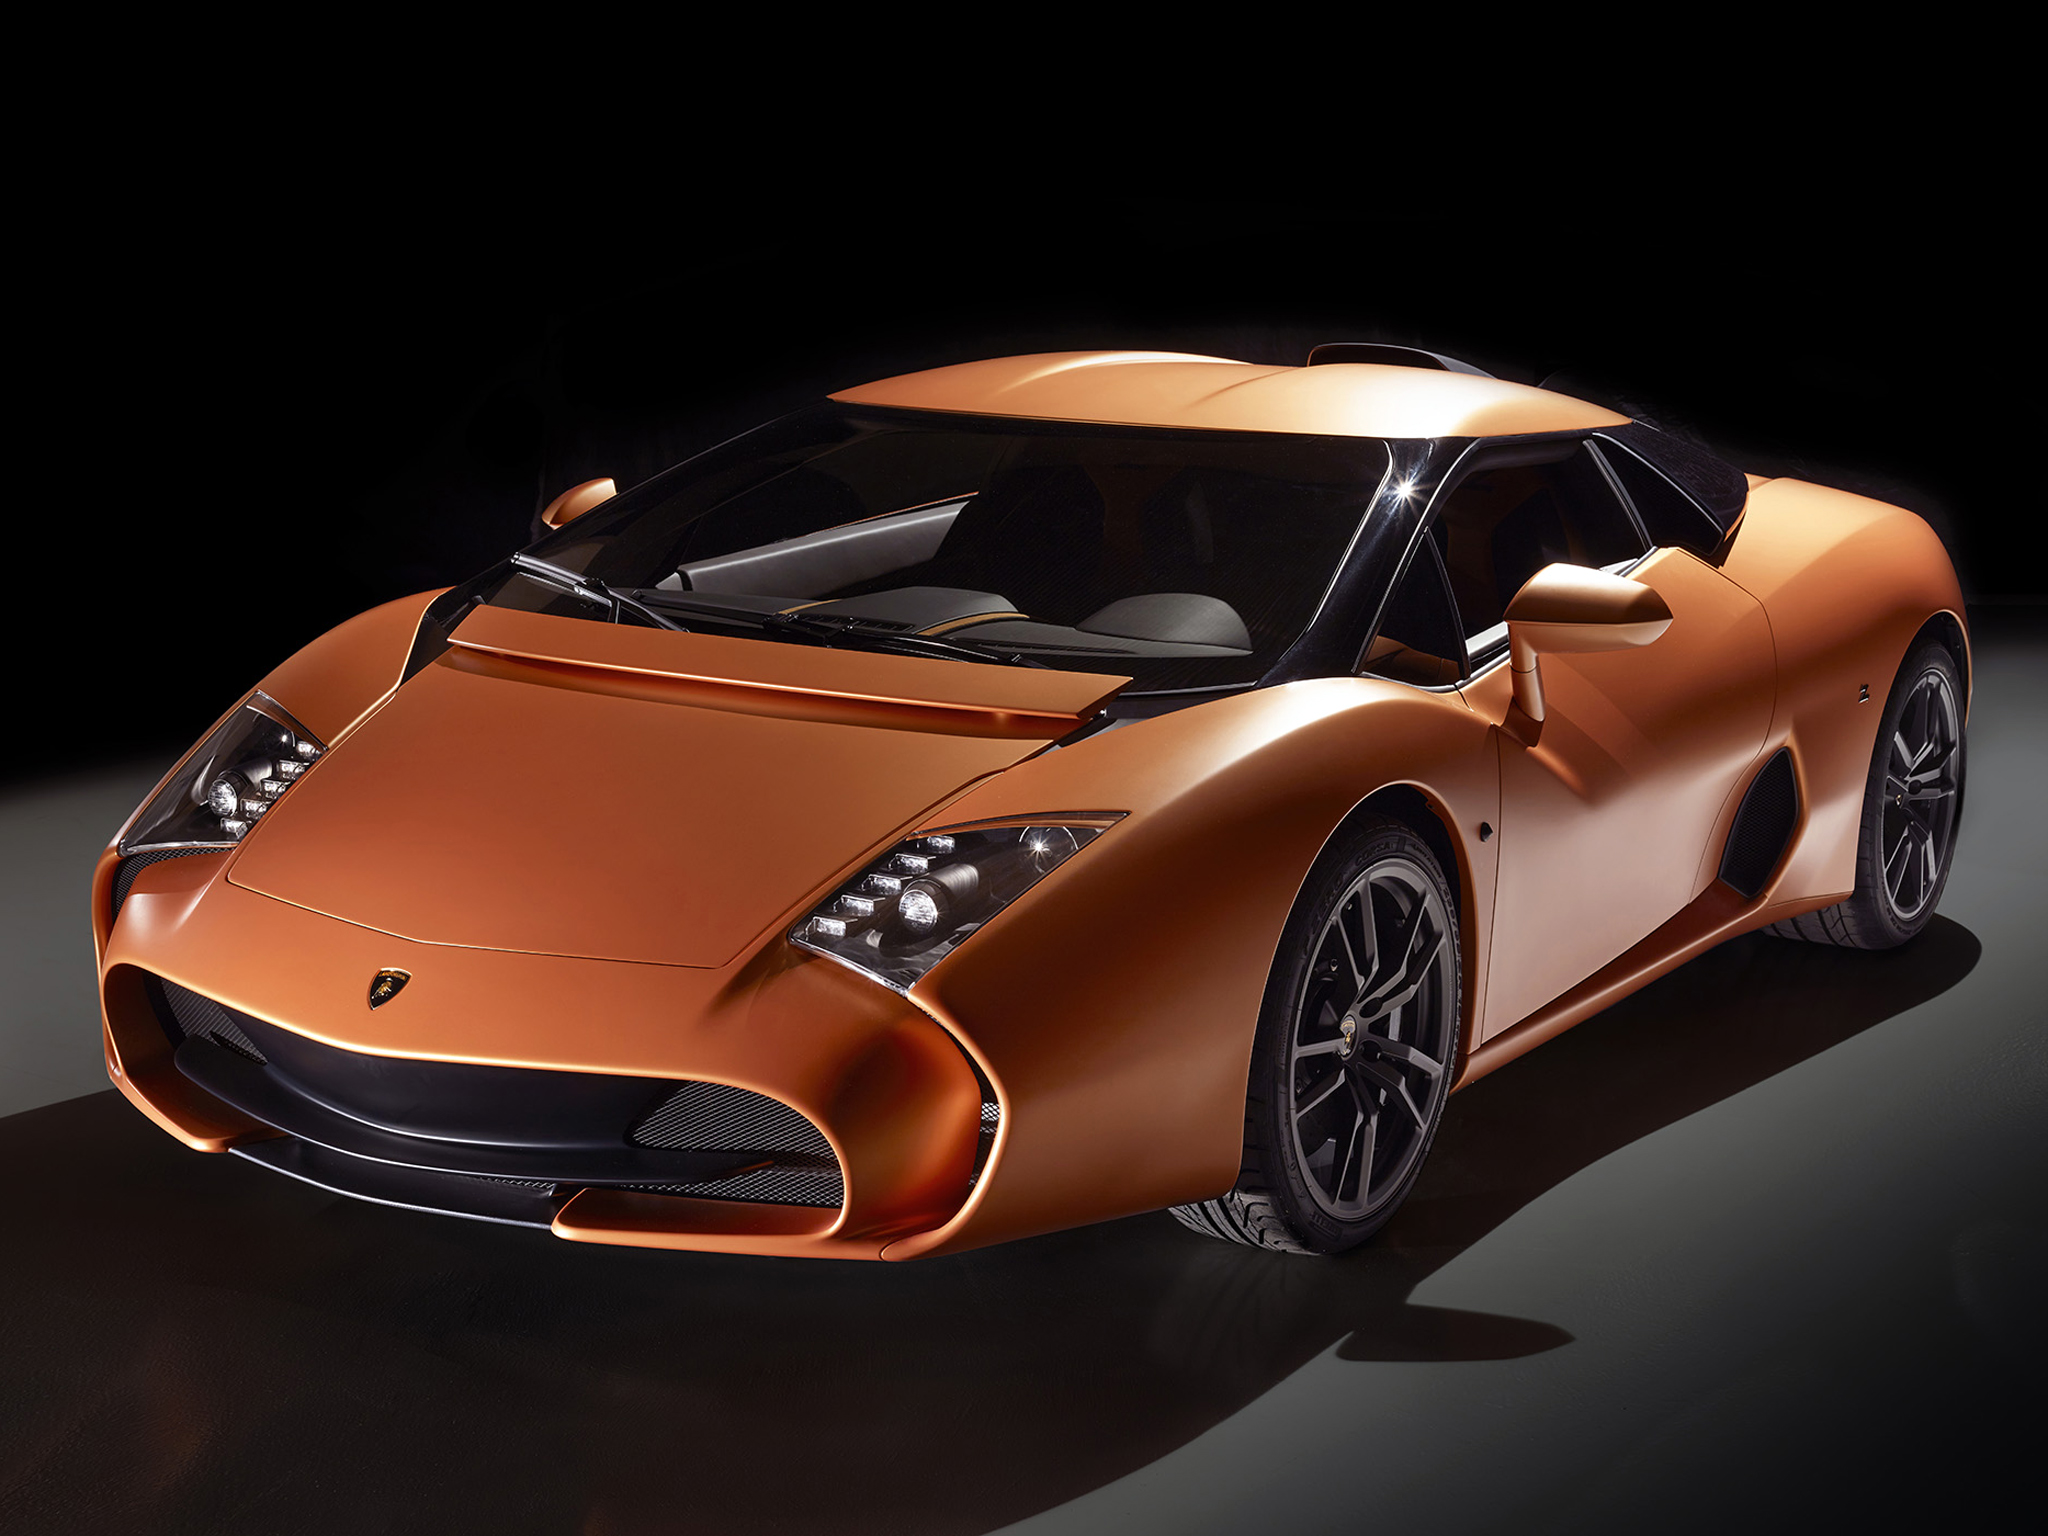 Vehicles Lamborghini 5-95 Zagato Concept HD Wallpaper | Background Image